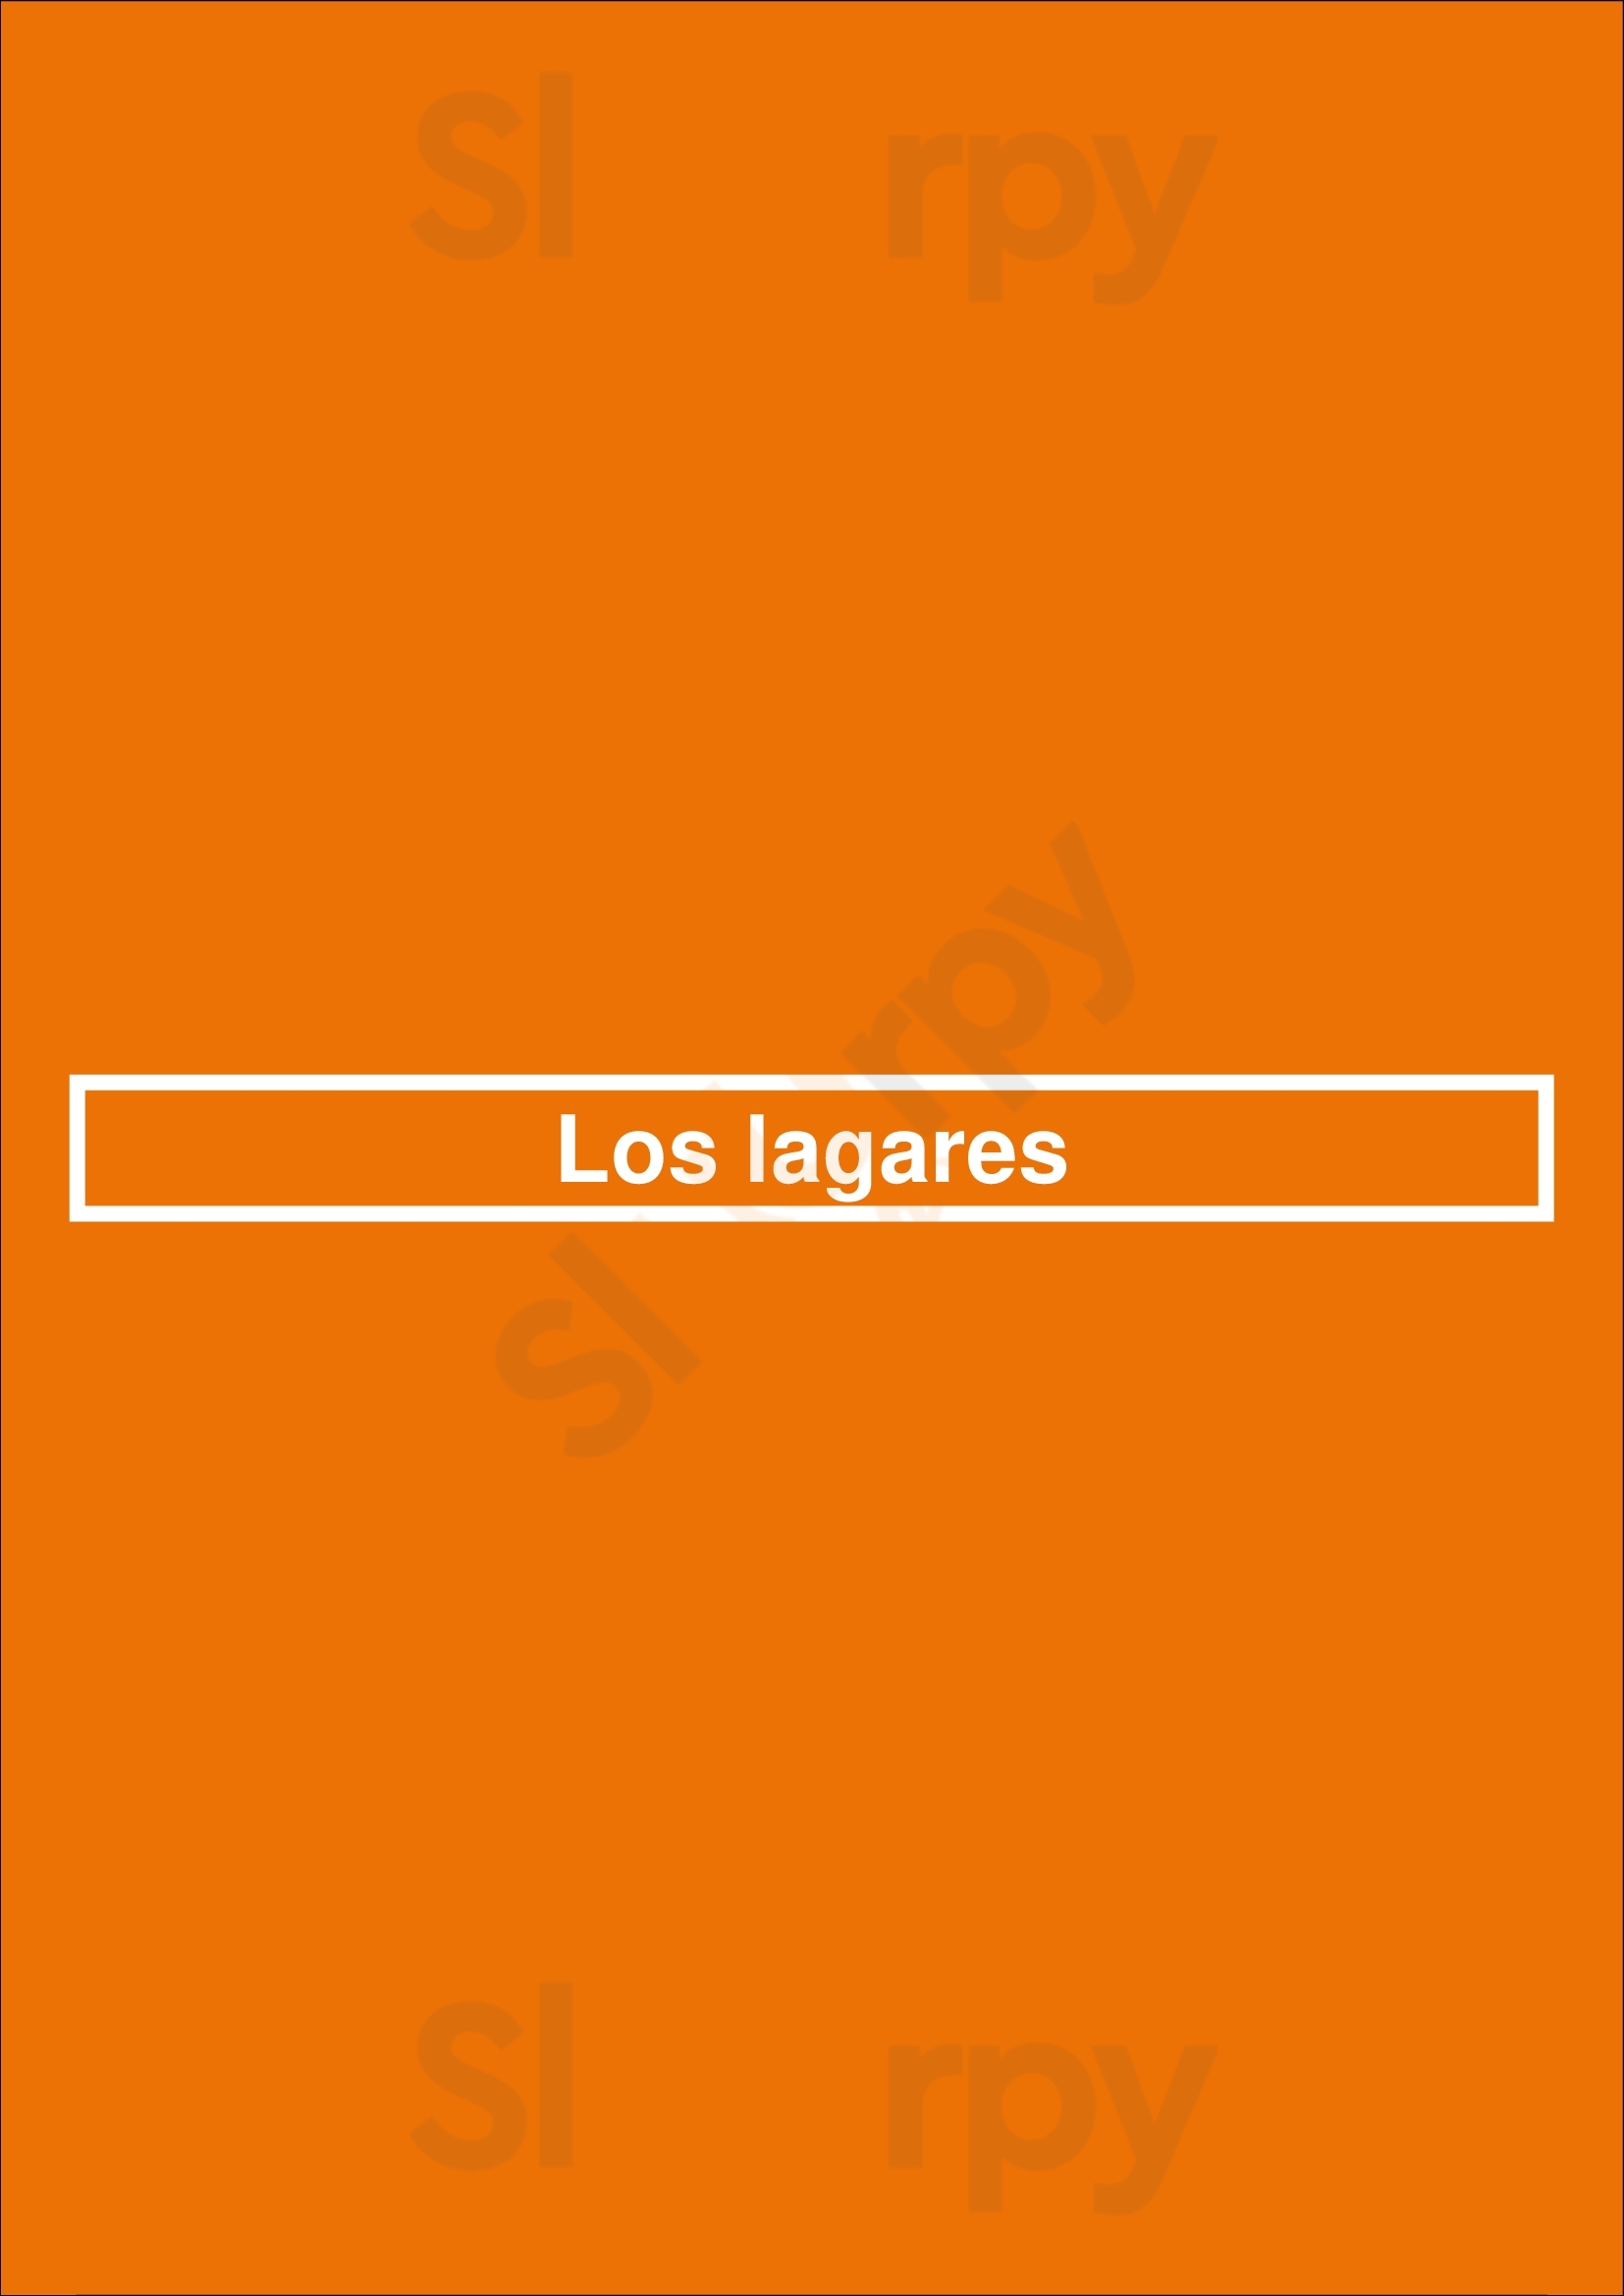 Los Lagares Maracena Menu - 1